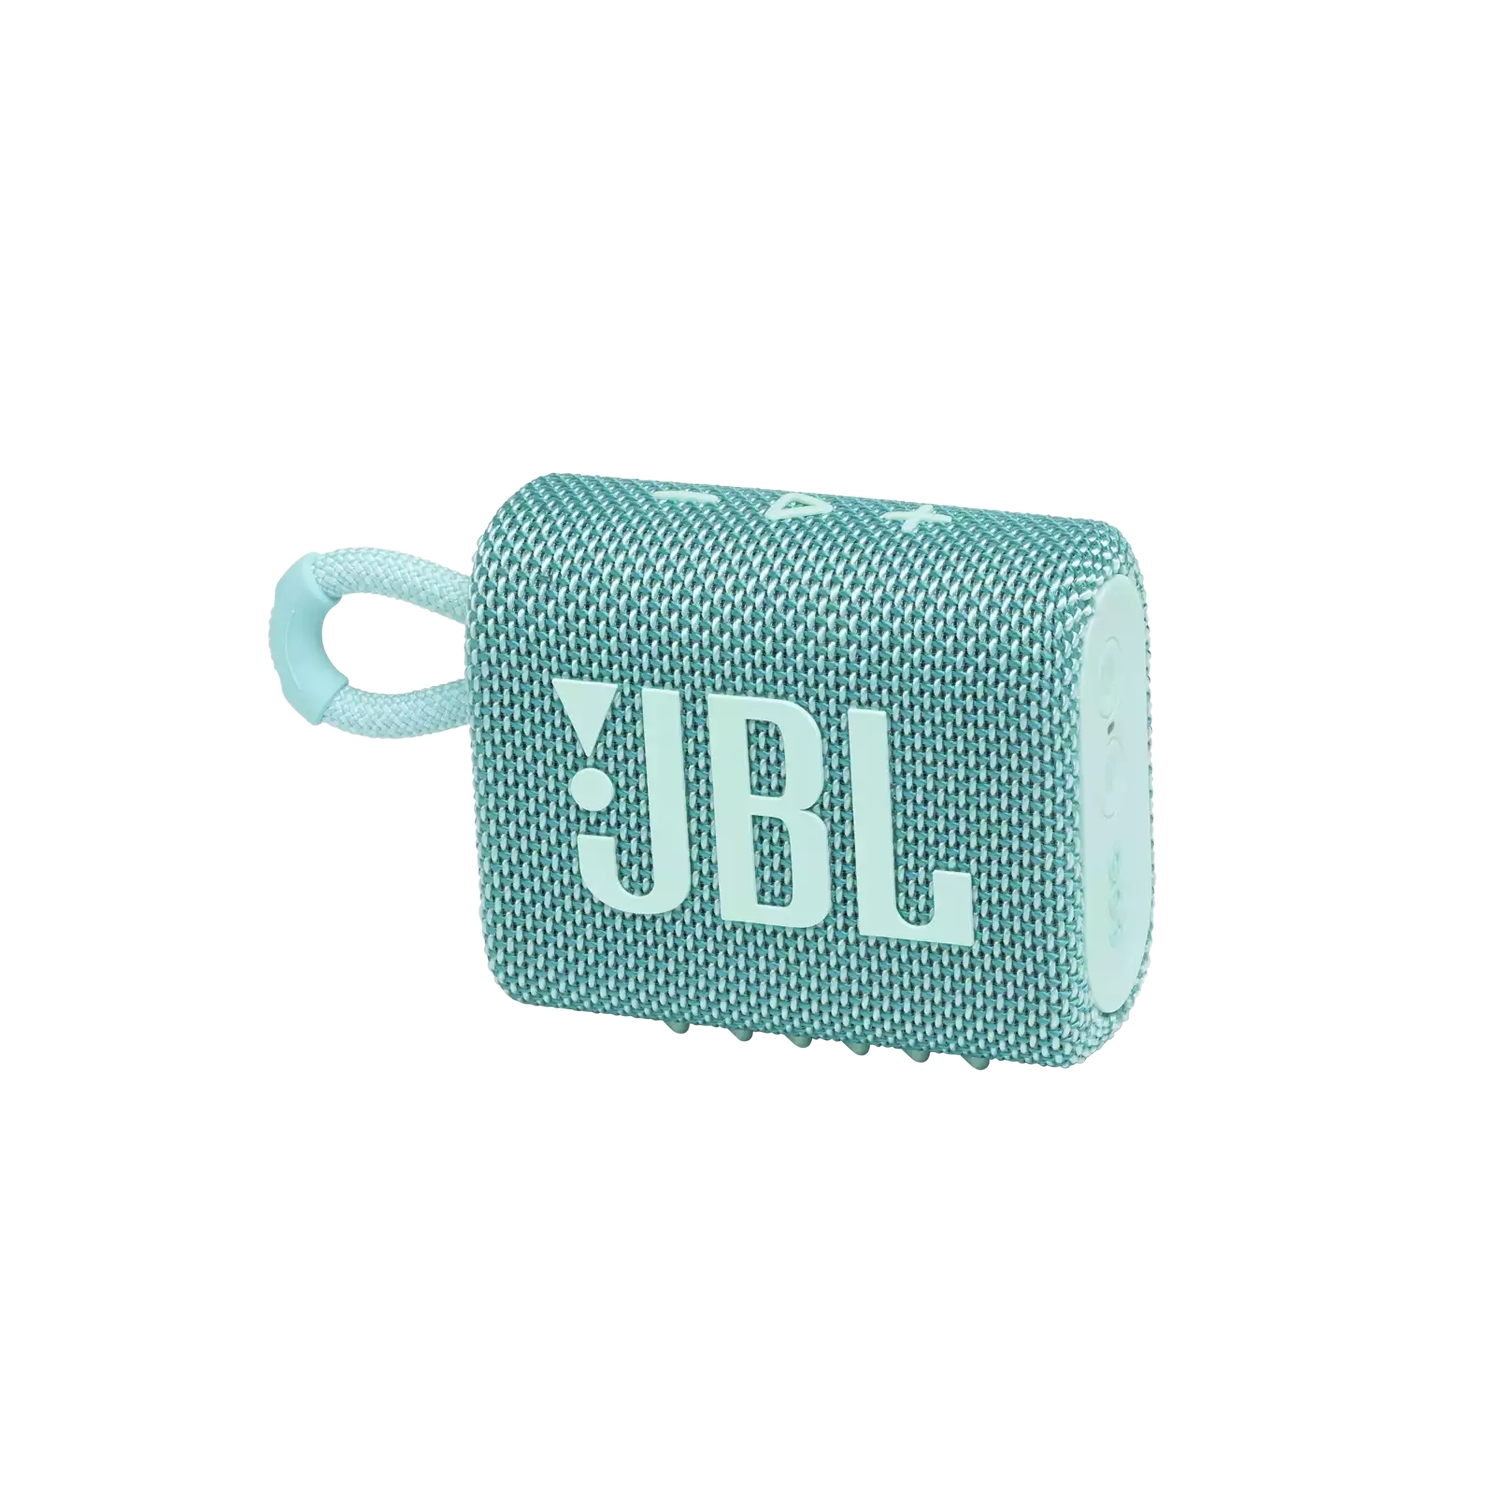 Портативная акустика JBL GO 3 бирюзовая портативная акустика jbl go 3 white